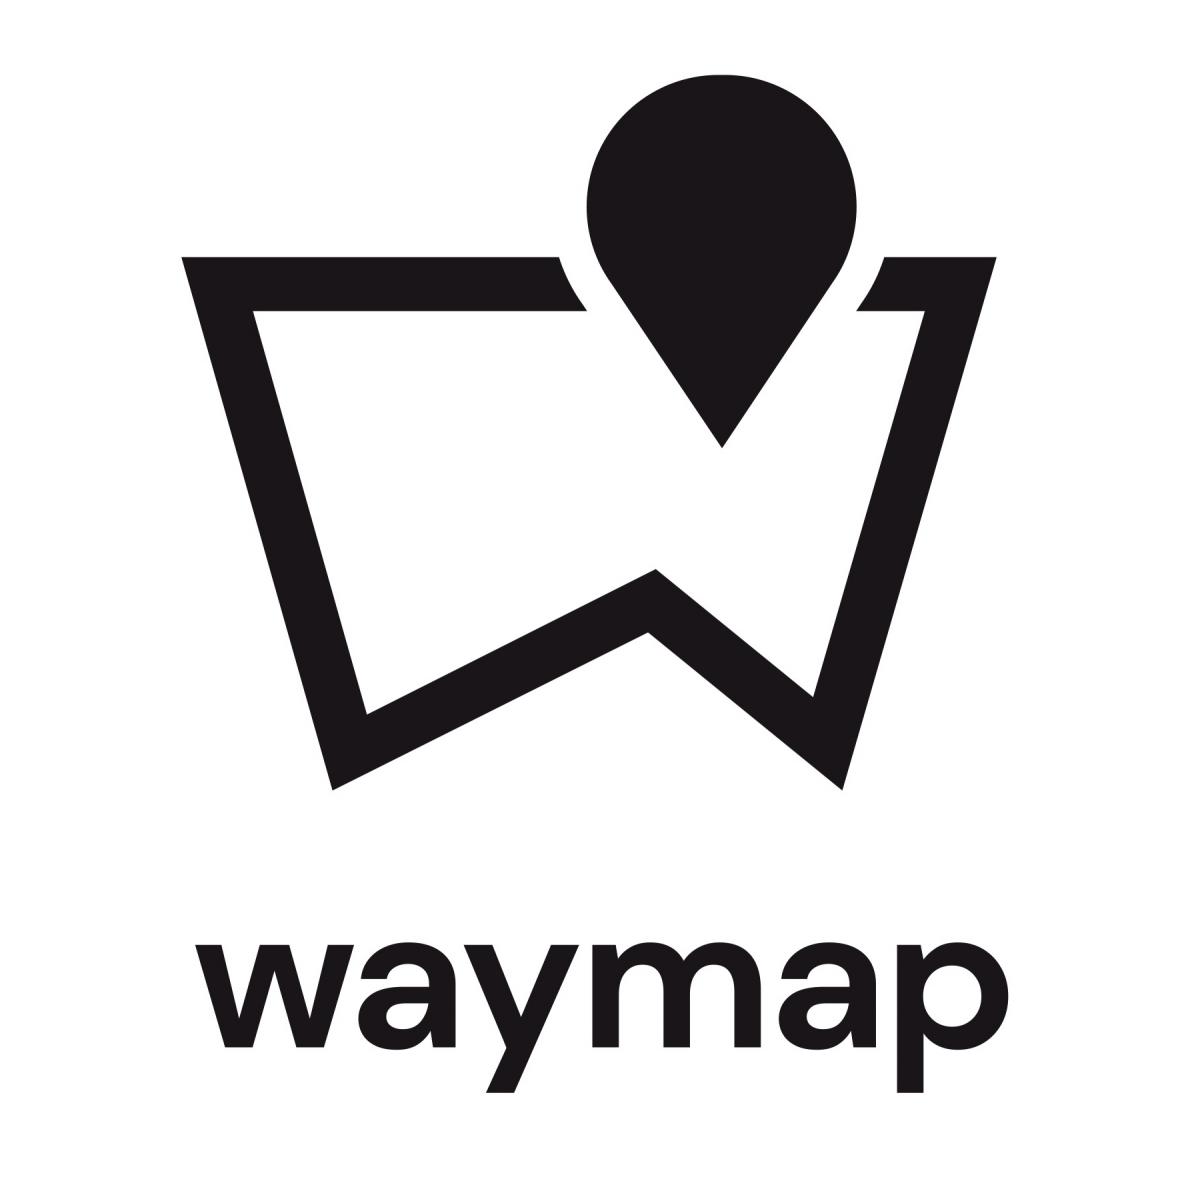 Waymap logo.